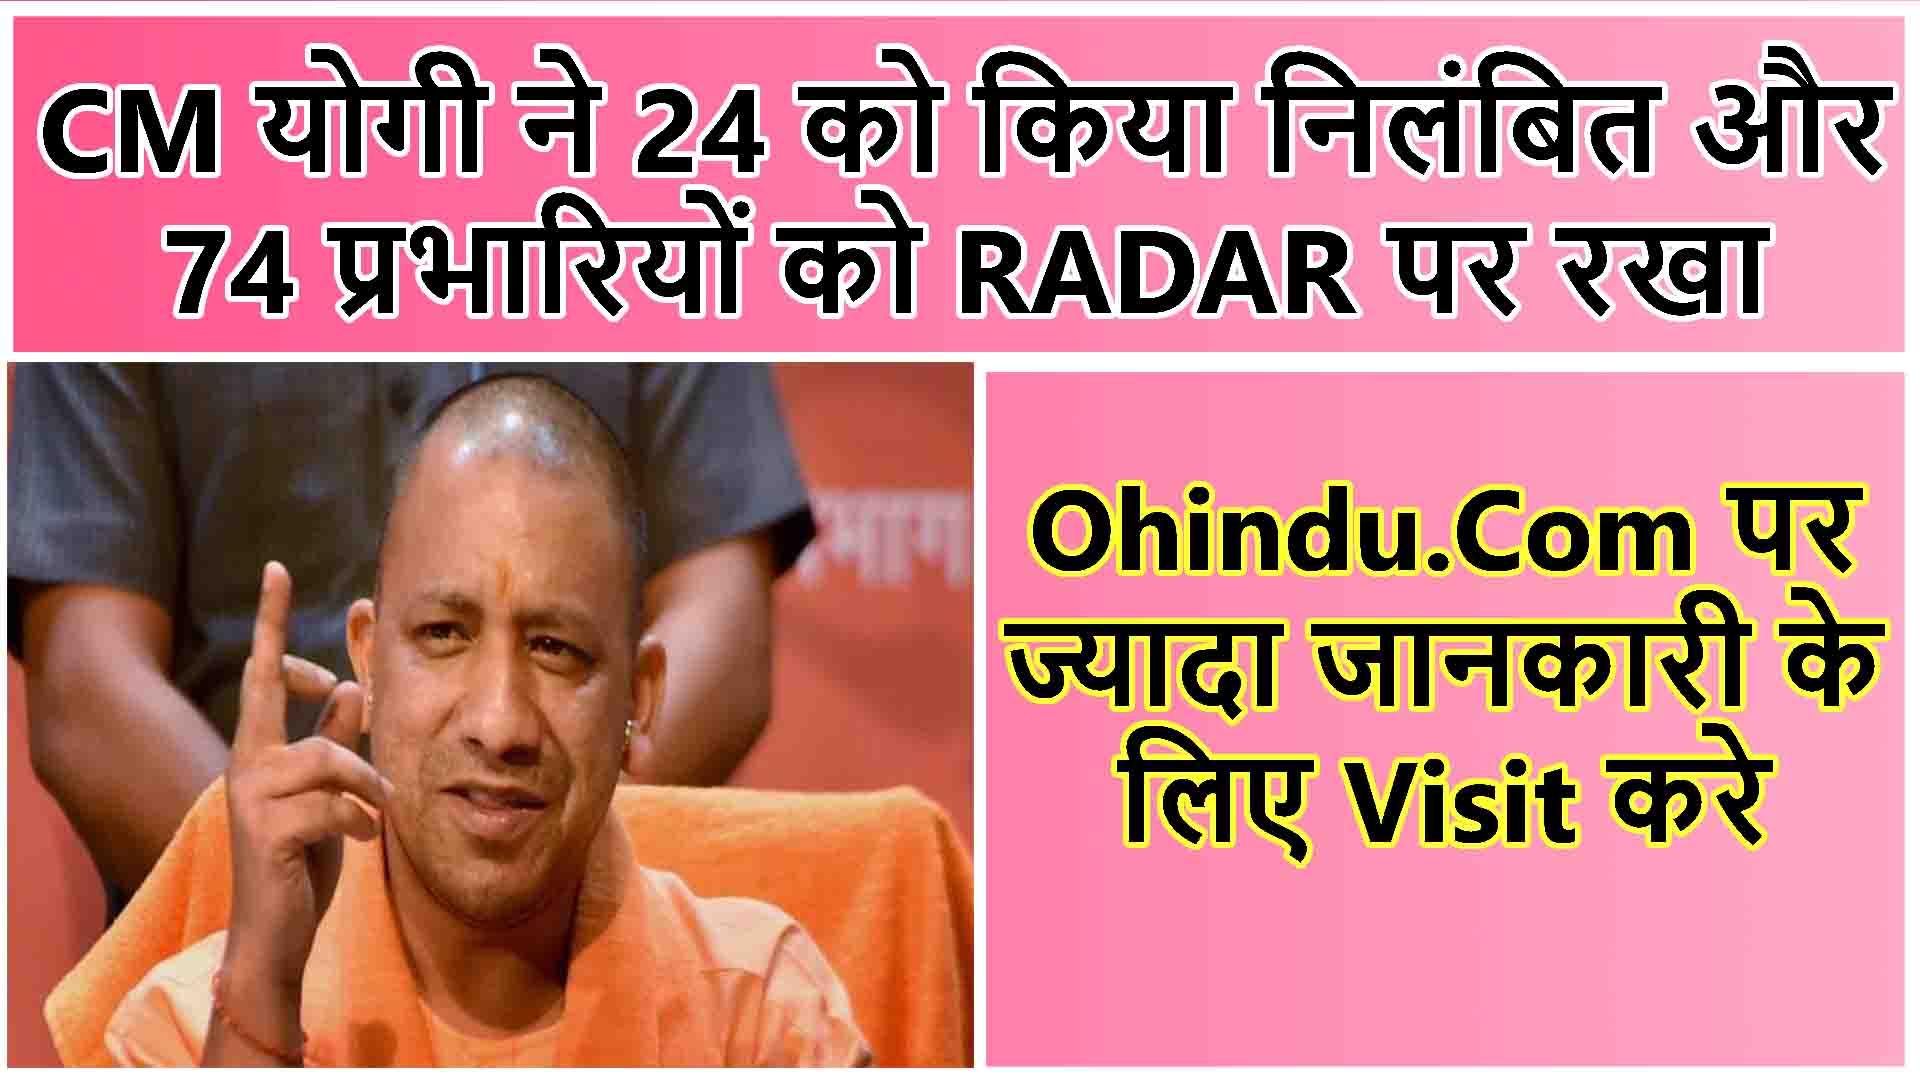 CM योगी ने 24 को किया निलंबित और 74 प्रभारियों को RADAR पर रखा